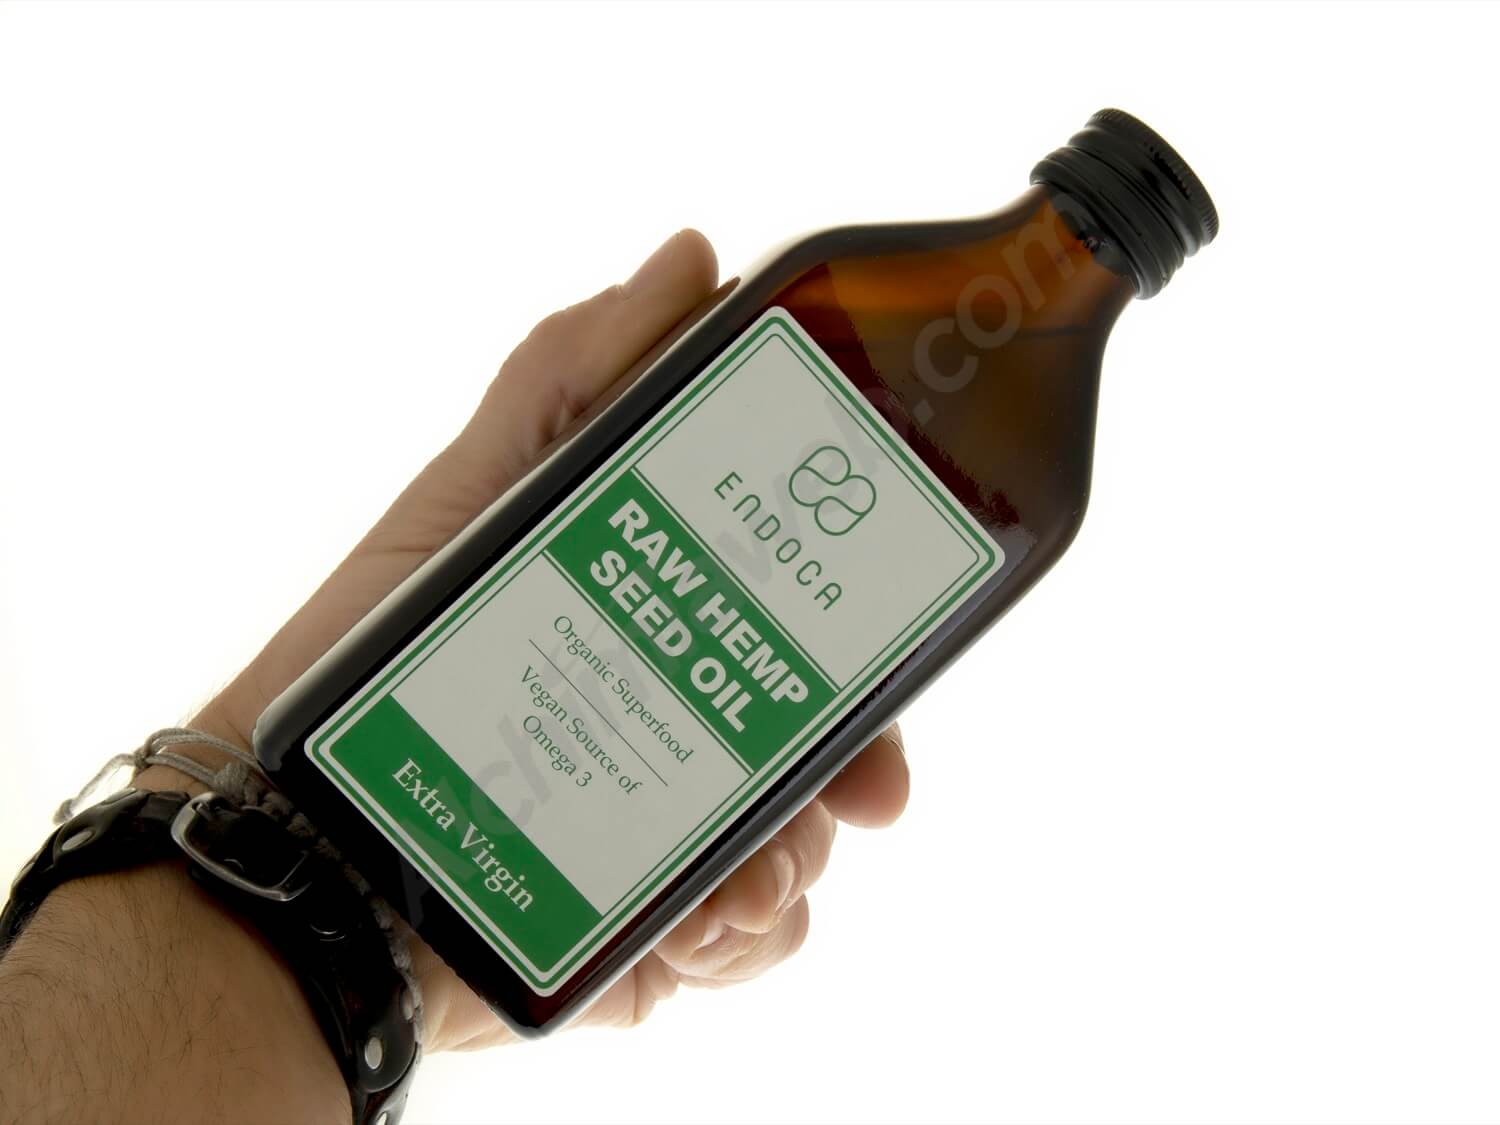 Endoca hemp seed oil 250ml